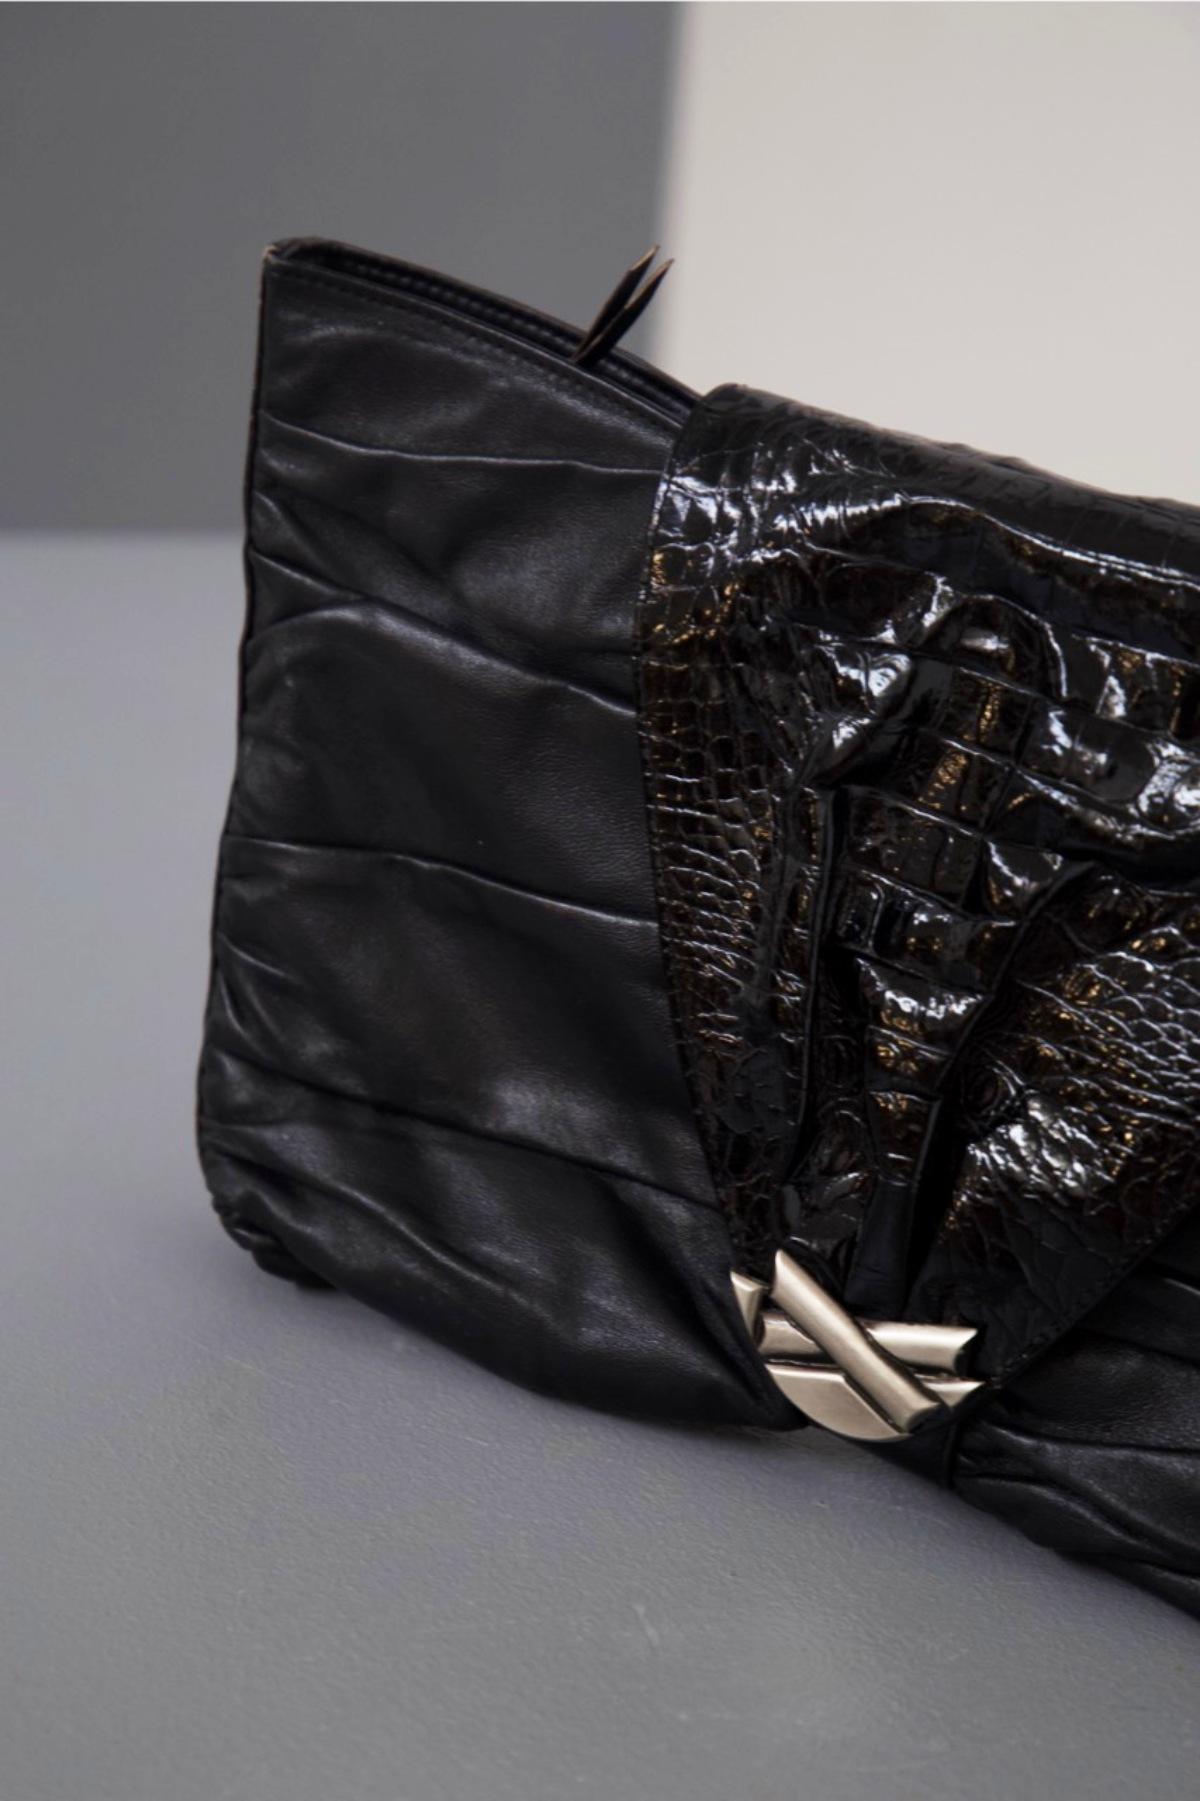 Élégante pochette en cuir noir conçue par Gianni Versace dans les années 1980, belle fabrication italienne.
ÉTIQUETTE ET MARQUE D'ORIGINE.
La b orse a une forme rectangulaire biseautée classique, avec des lignes très douces dues au cuir souple.
Le